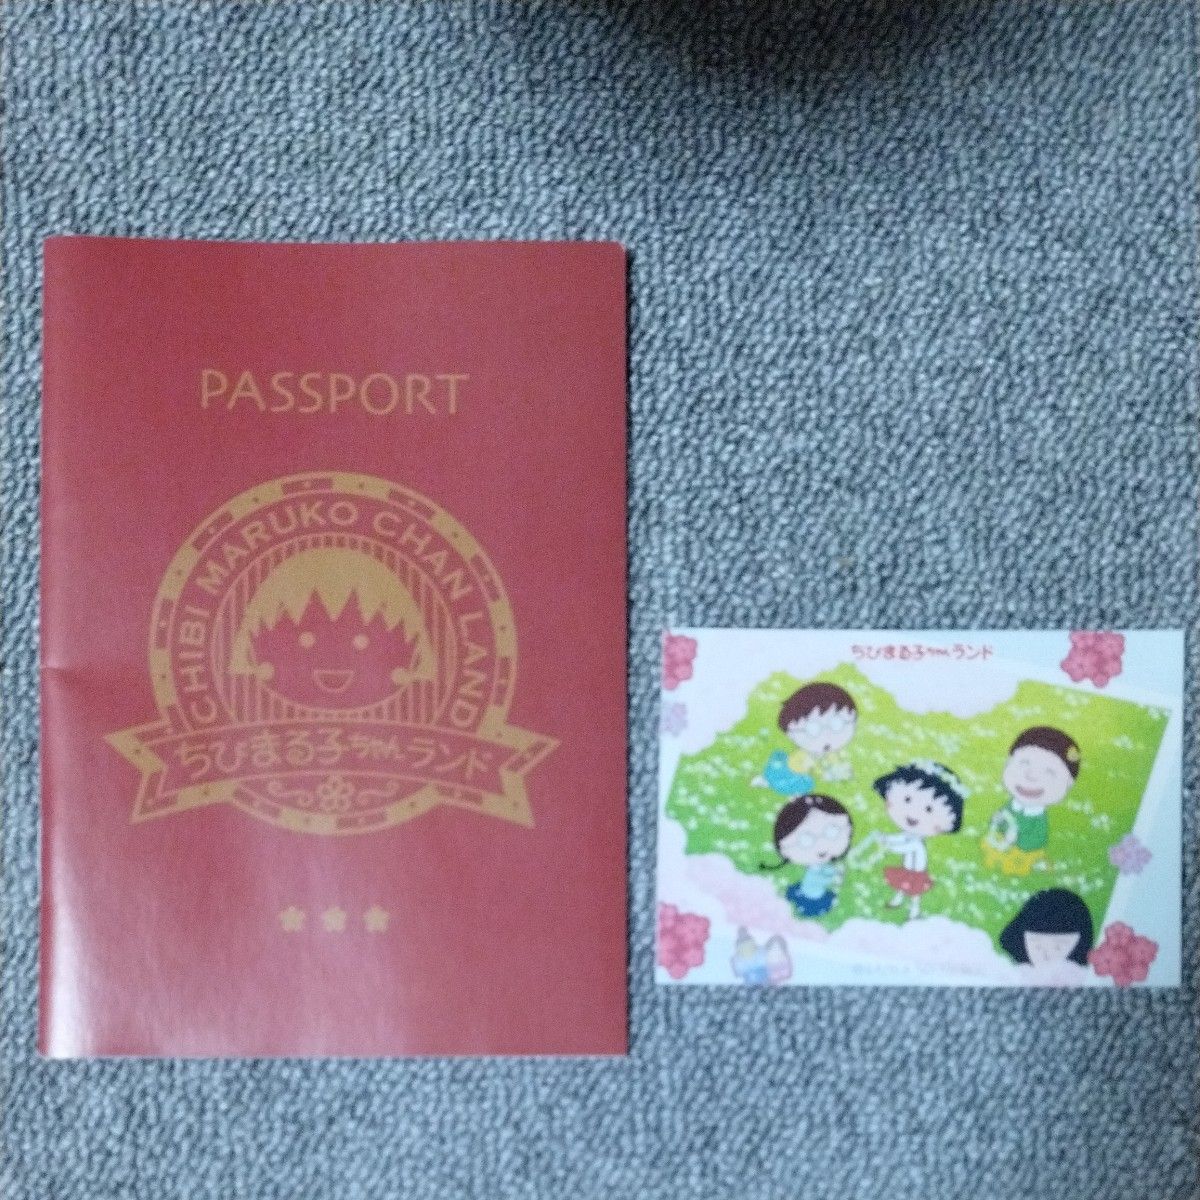 ちびまる子ちゃんランド パスポート ステッカー セット